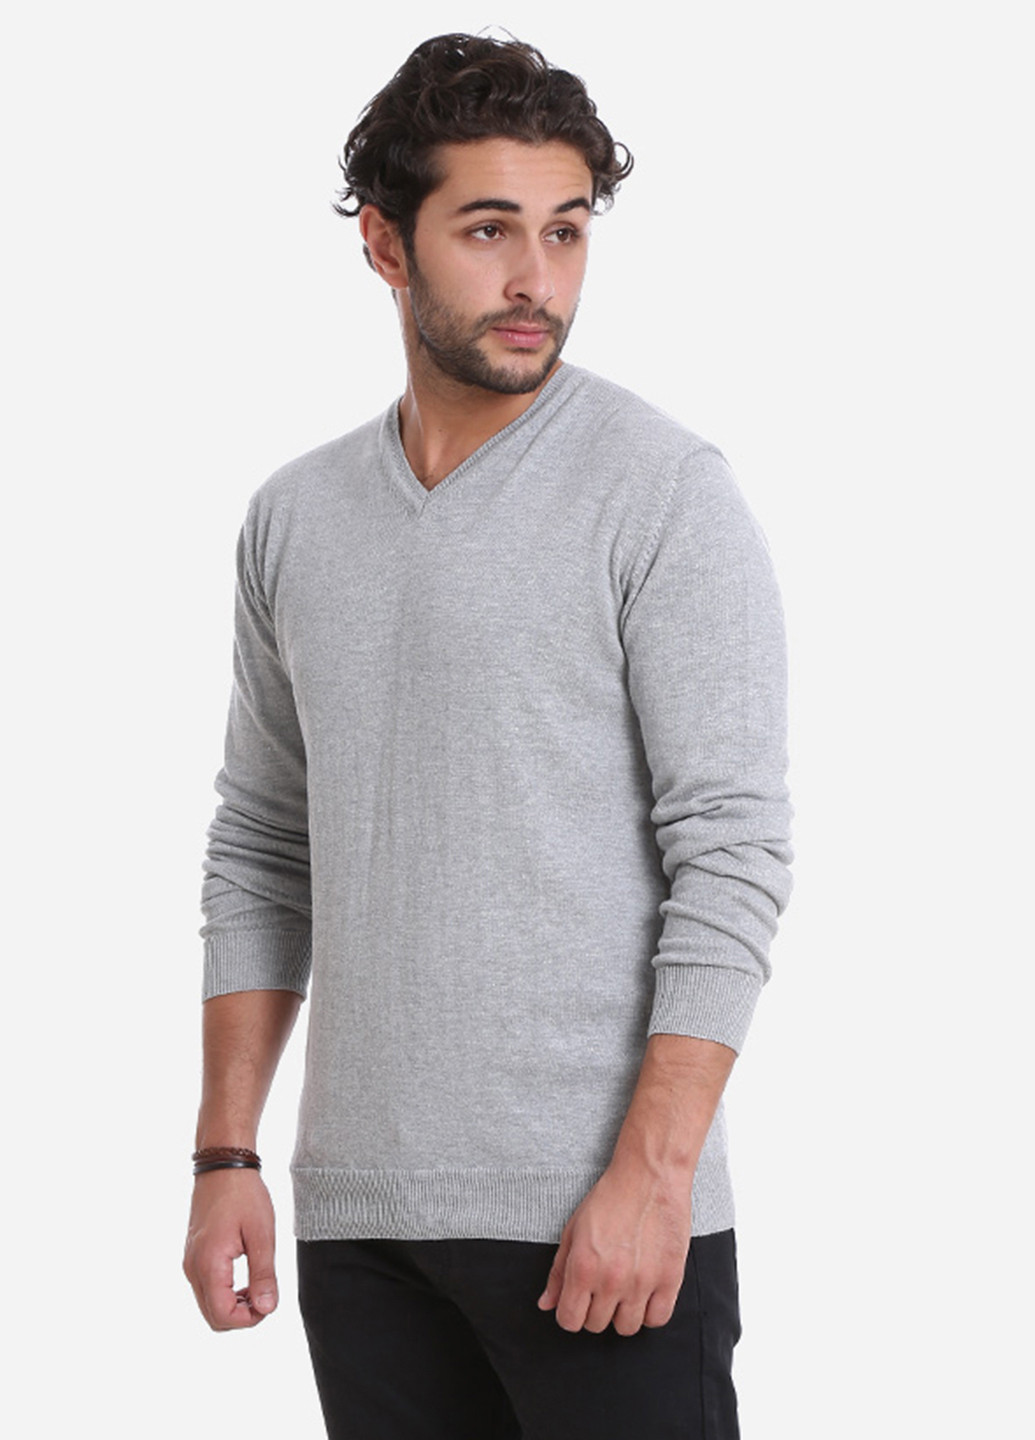 Светло-серый демисезонный пуловер пуловер Яavin